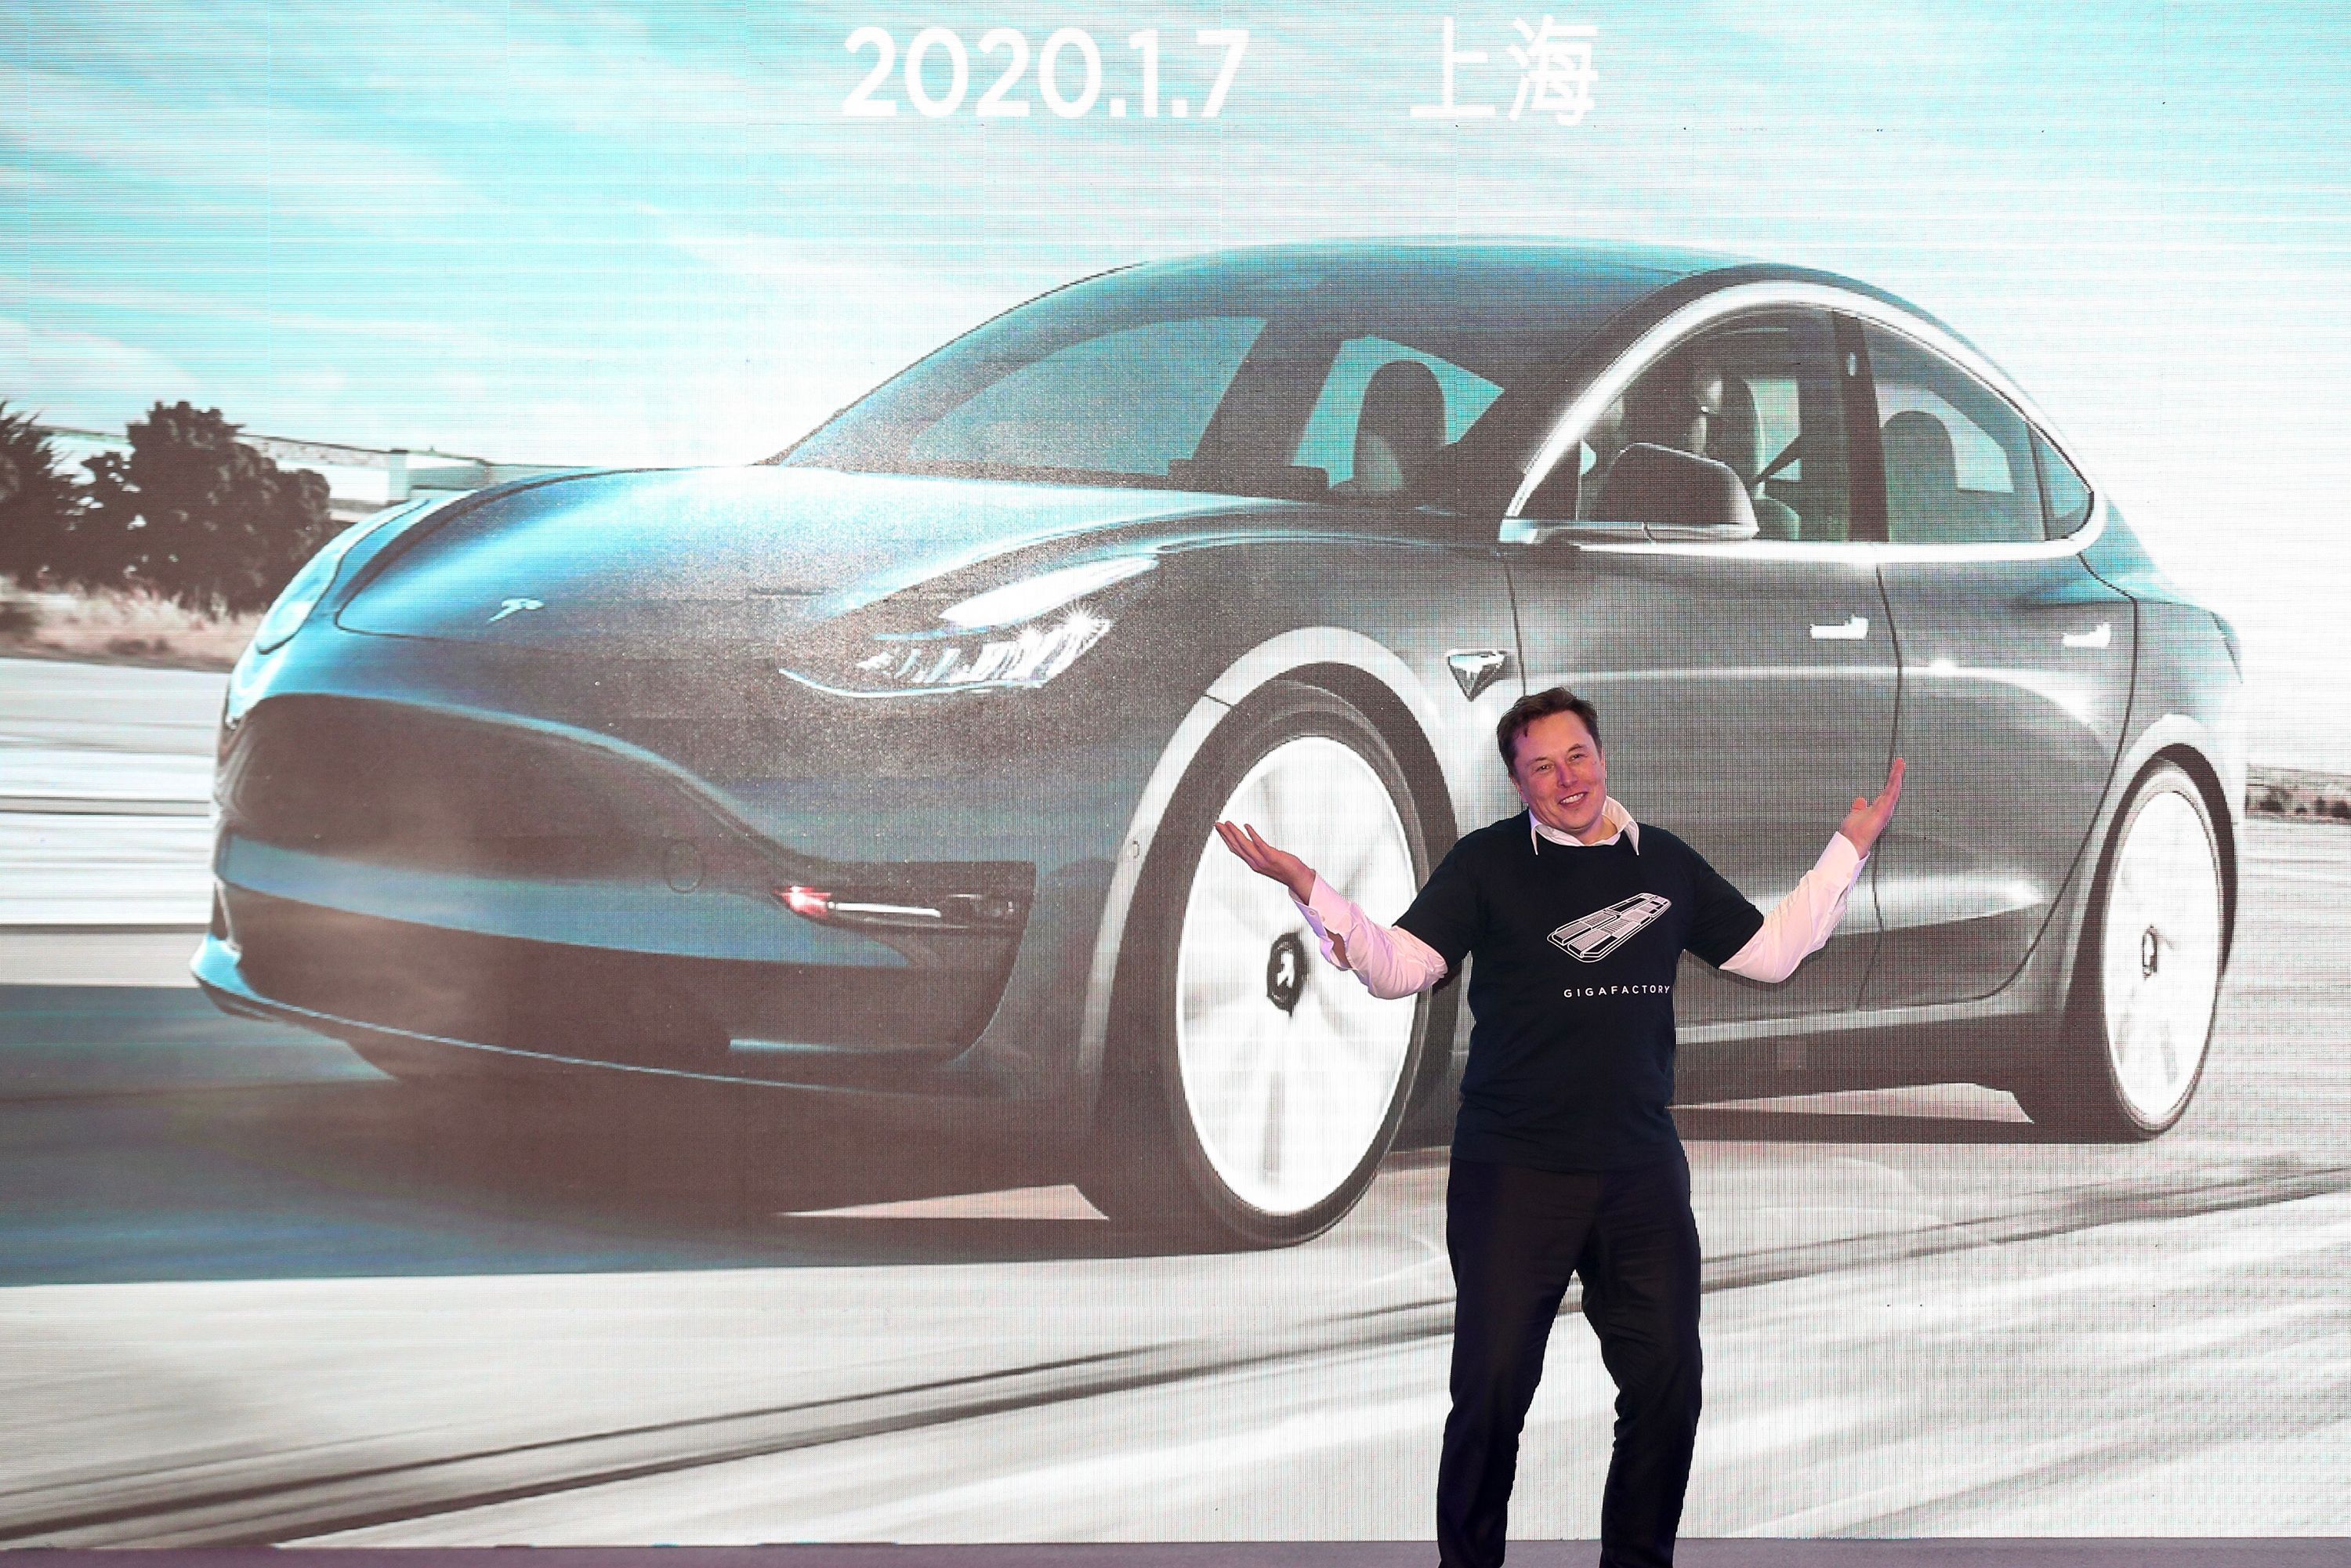 Tesla aiming to get Cybertruck 0-60 mph under 3 seconds: Elon Musk